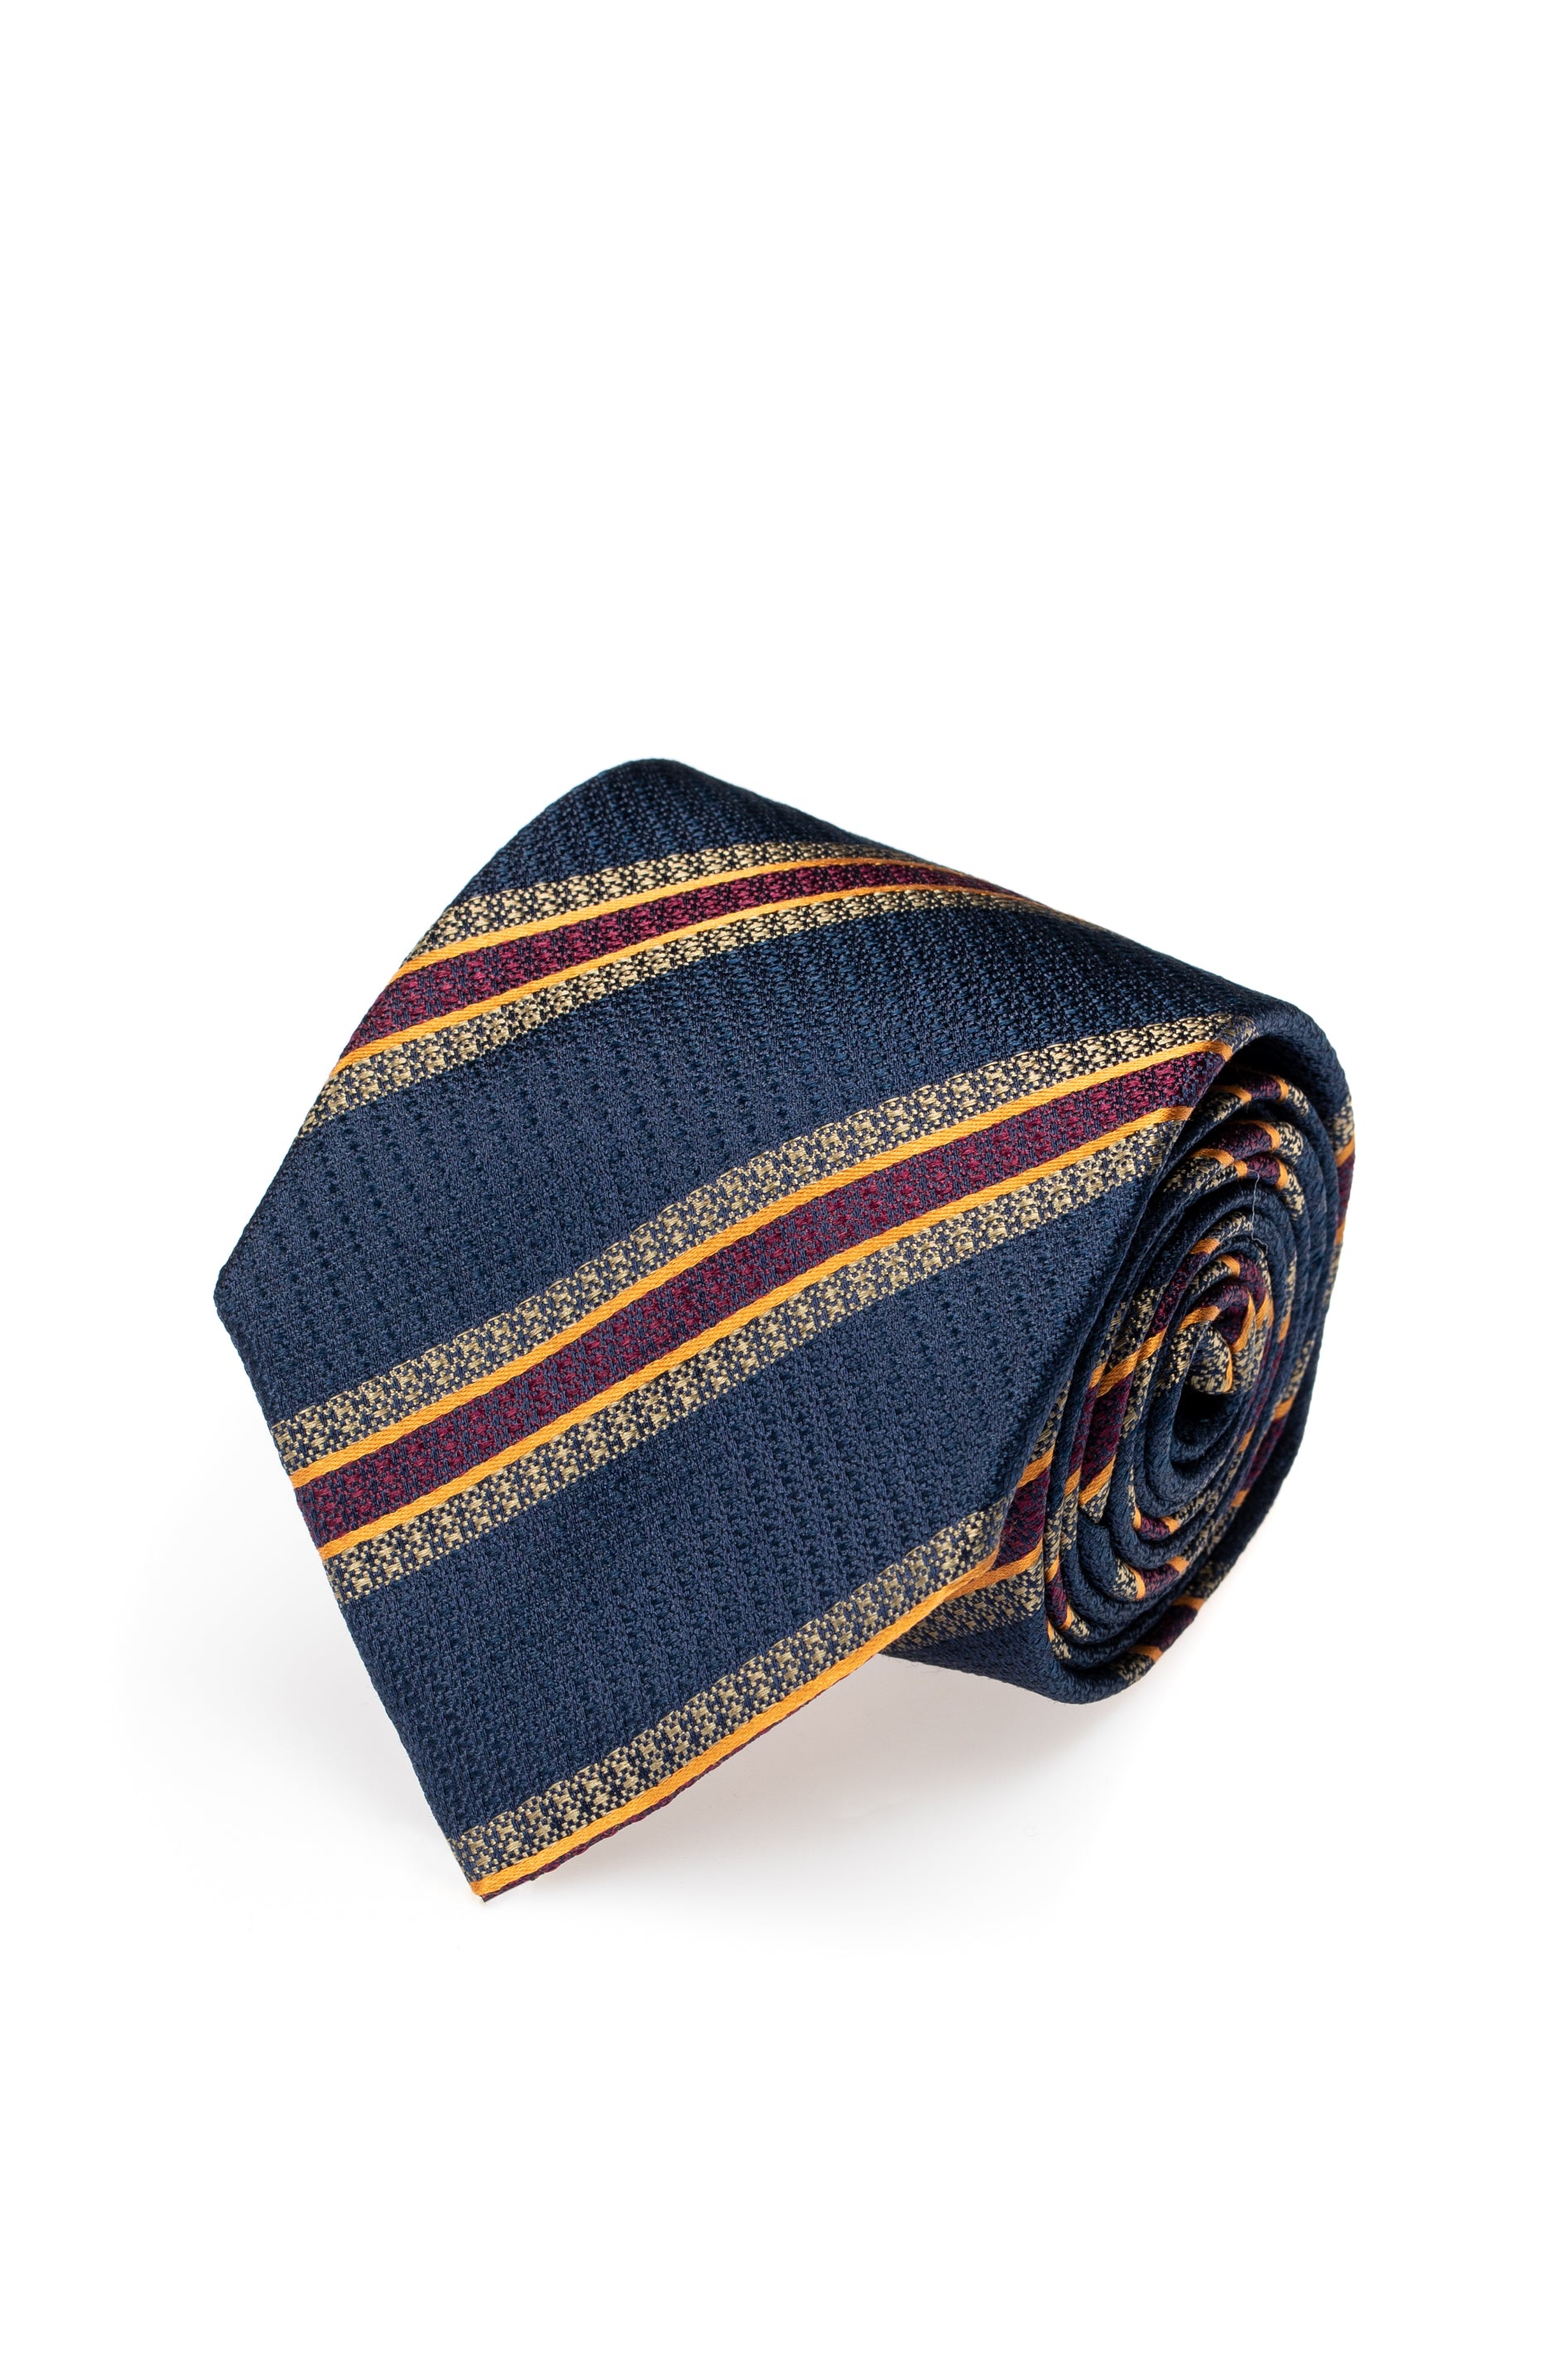 Cravatta in seta blu navy con righe bordeaux